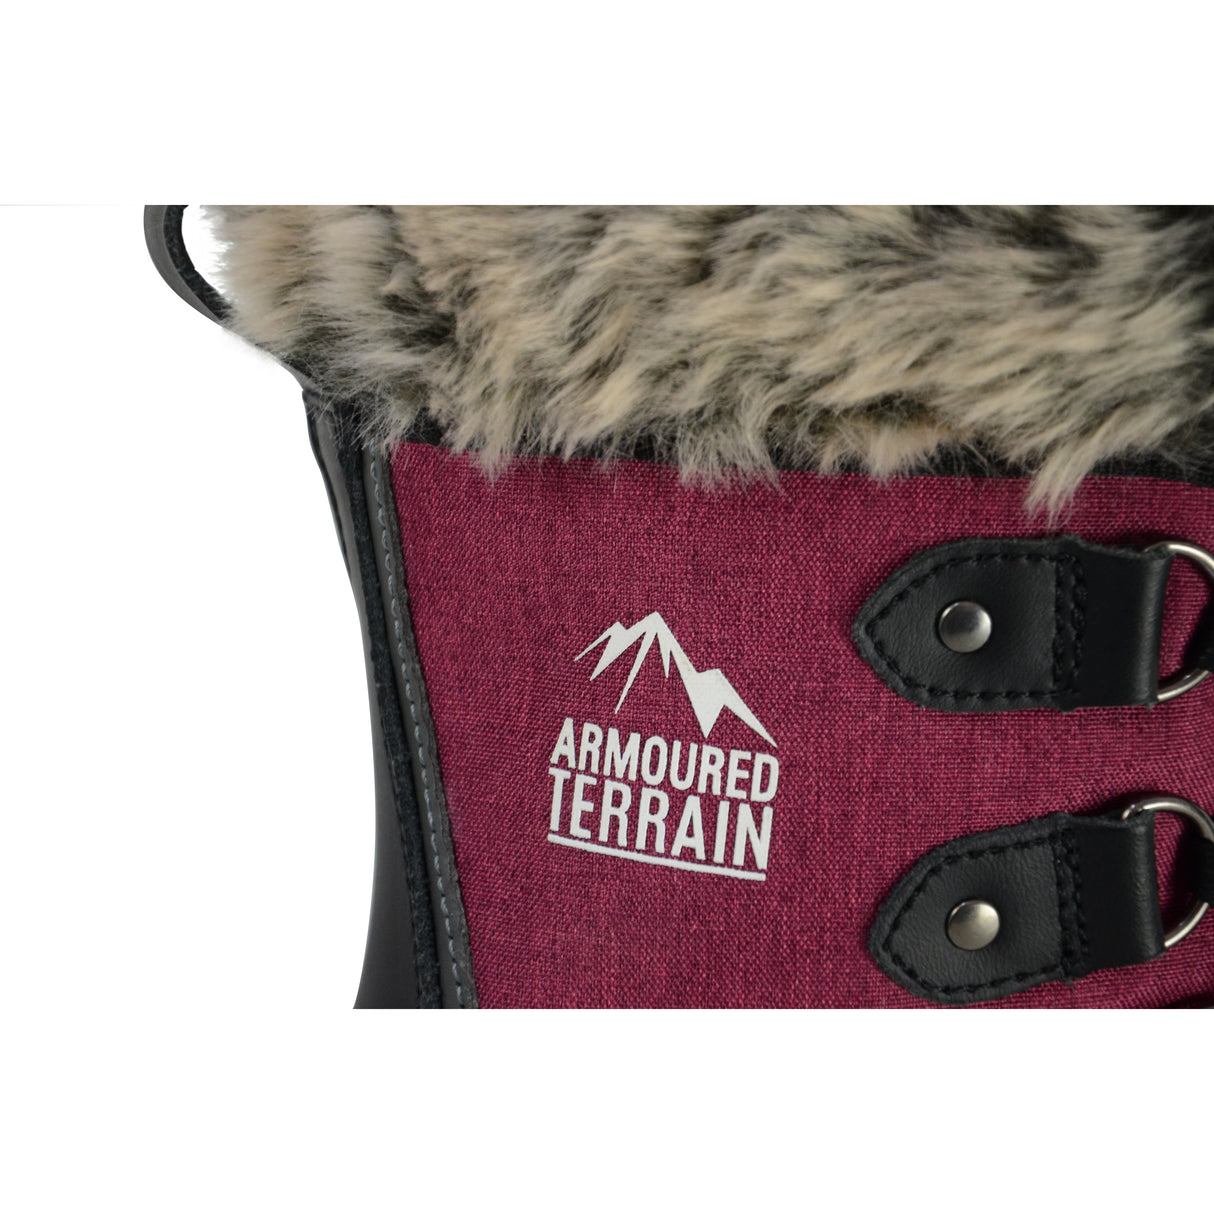 Hyland Short Mont Blanc vinterstøvler